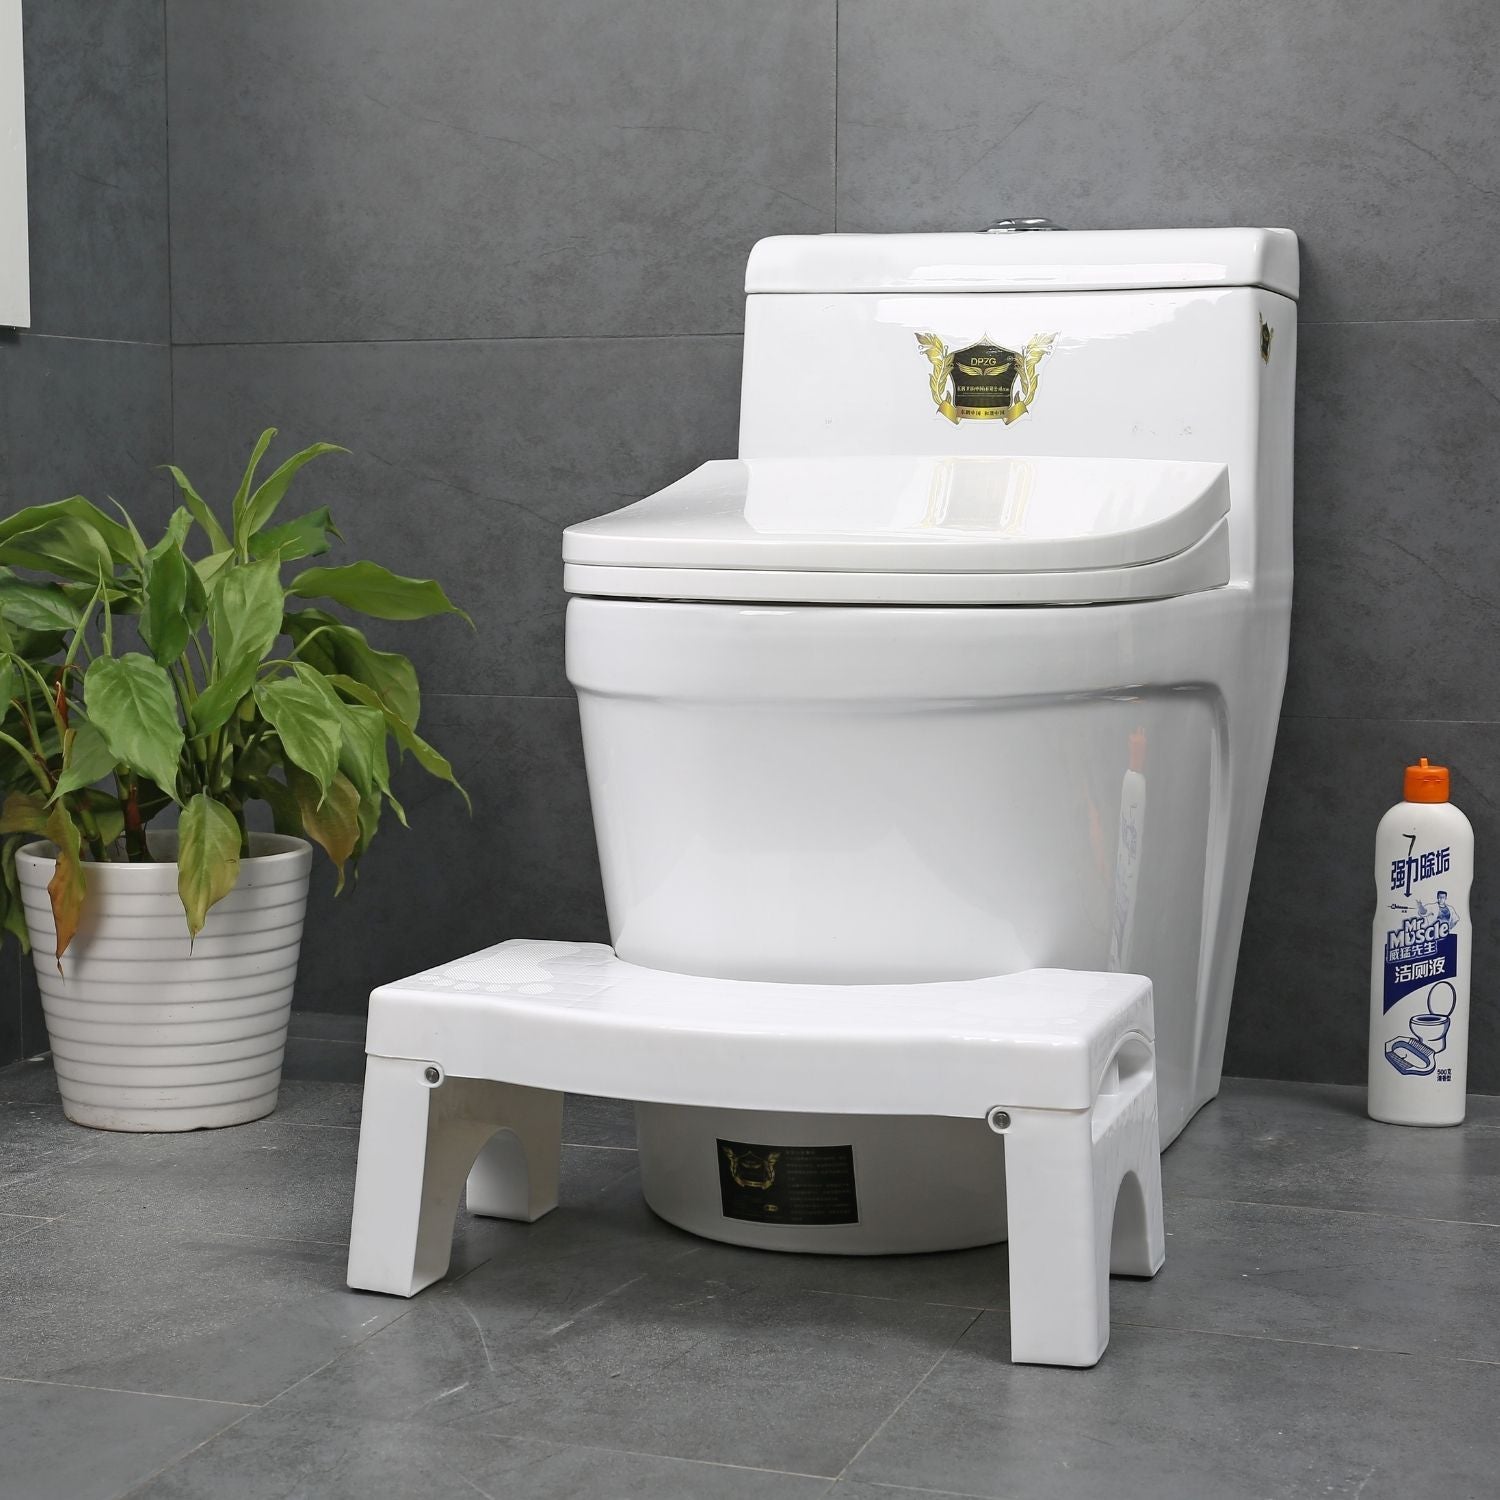 GOMINIMO Foldable Toilet Step Stool with Non-Slip Base (White)